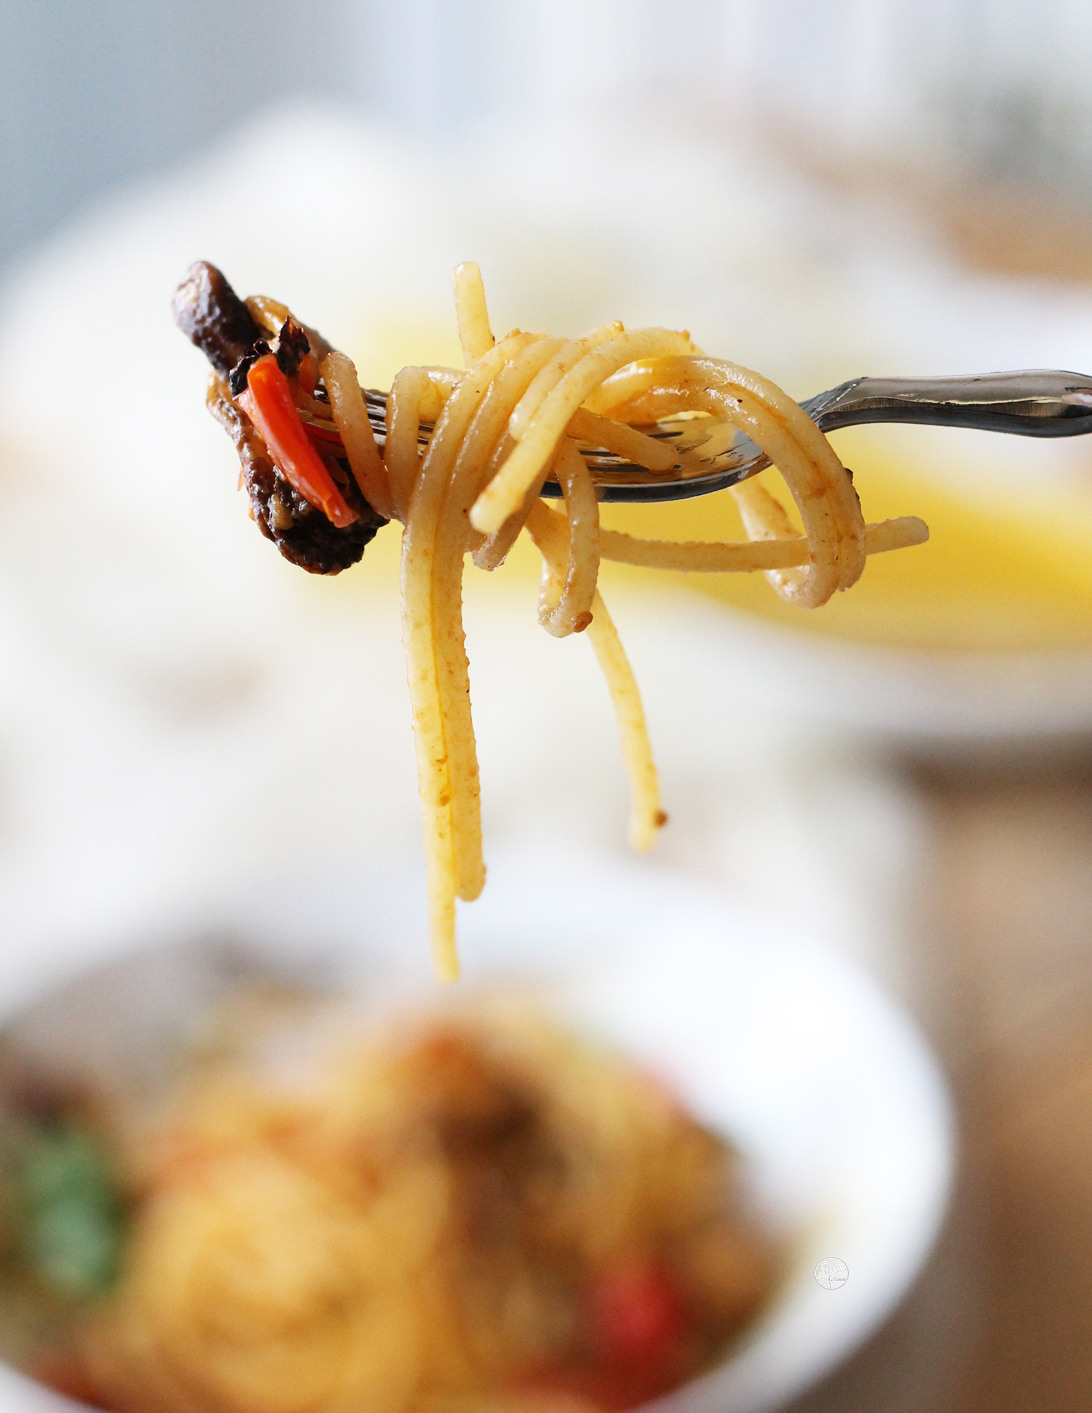 Spaghettis sans gluten avec moules et tomates - La Cassata Celiaca